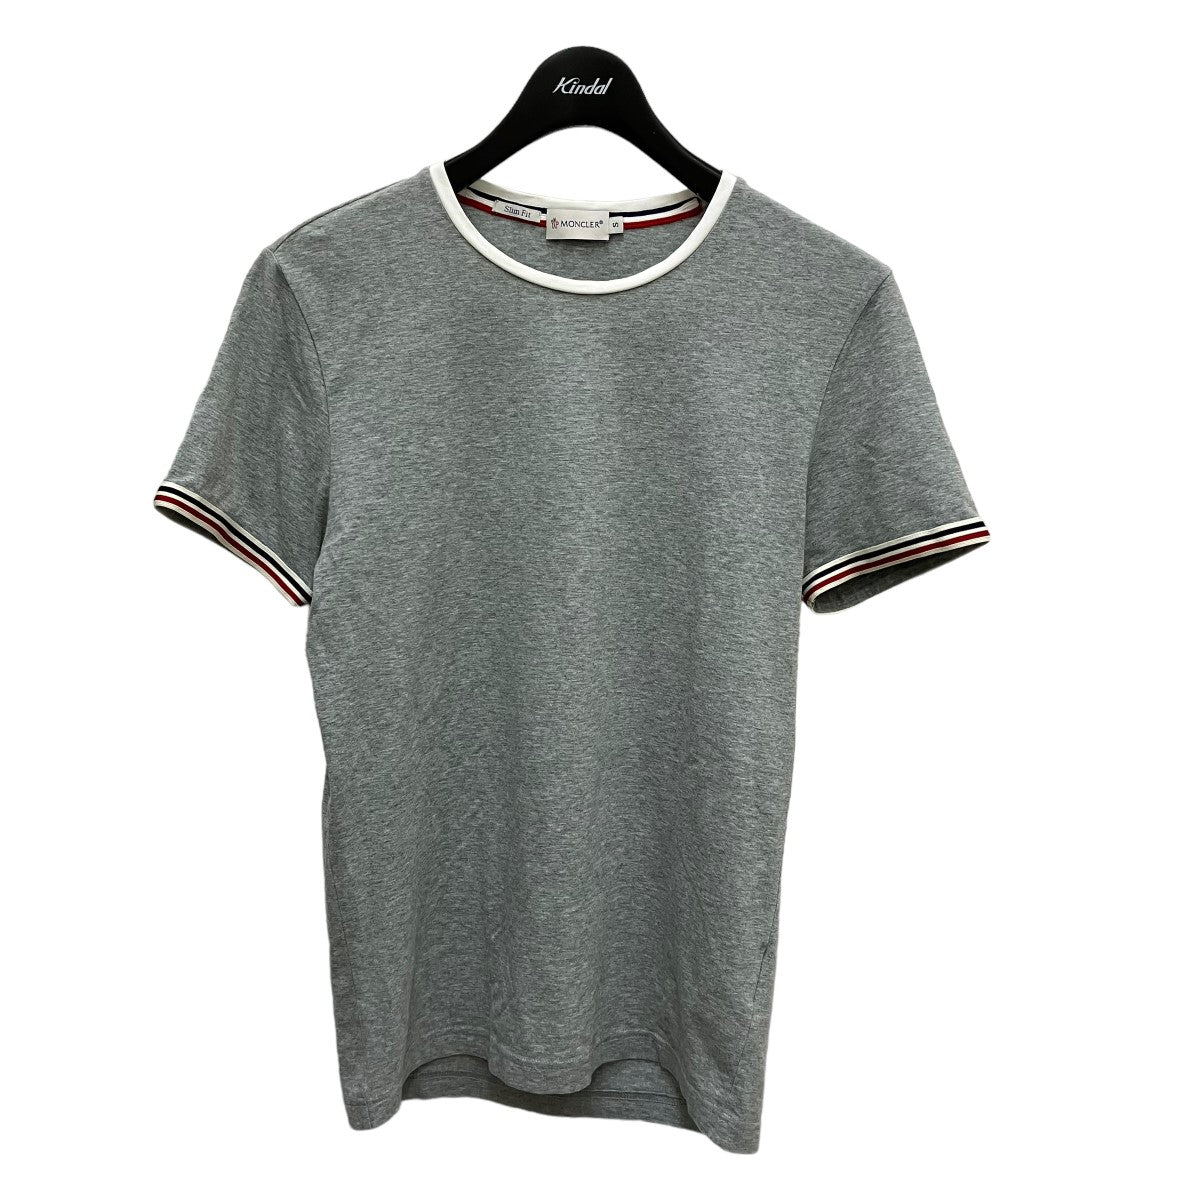 MONCLER(モンクレール) Tシャツ 510918005900 ライトグレー サイズ S ...